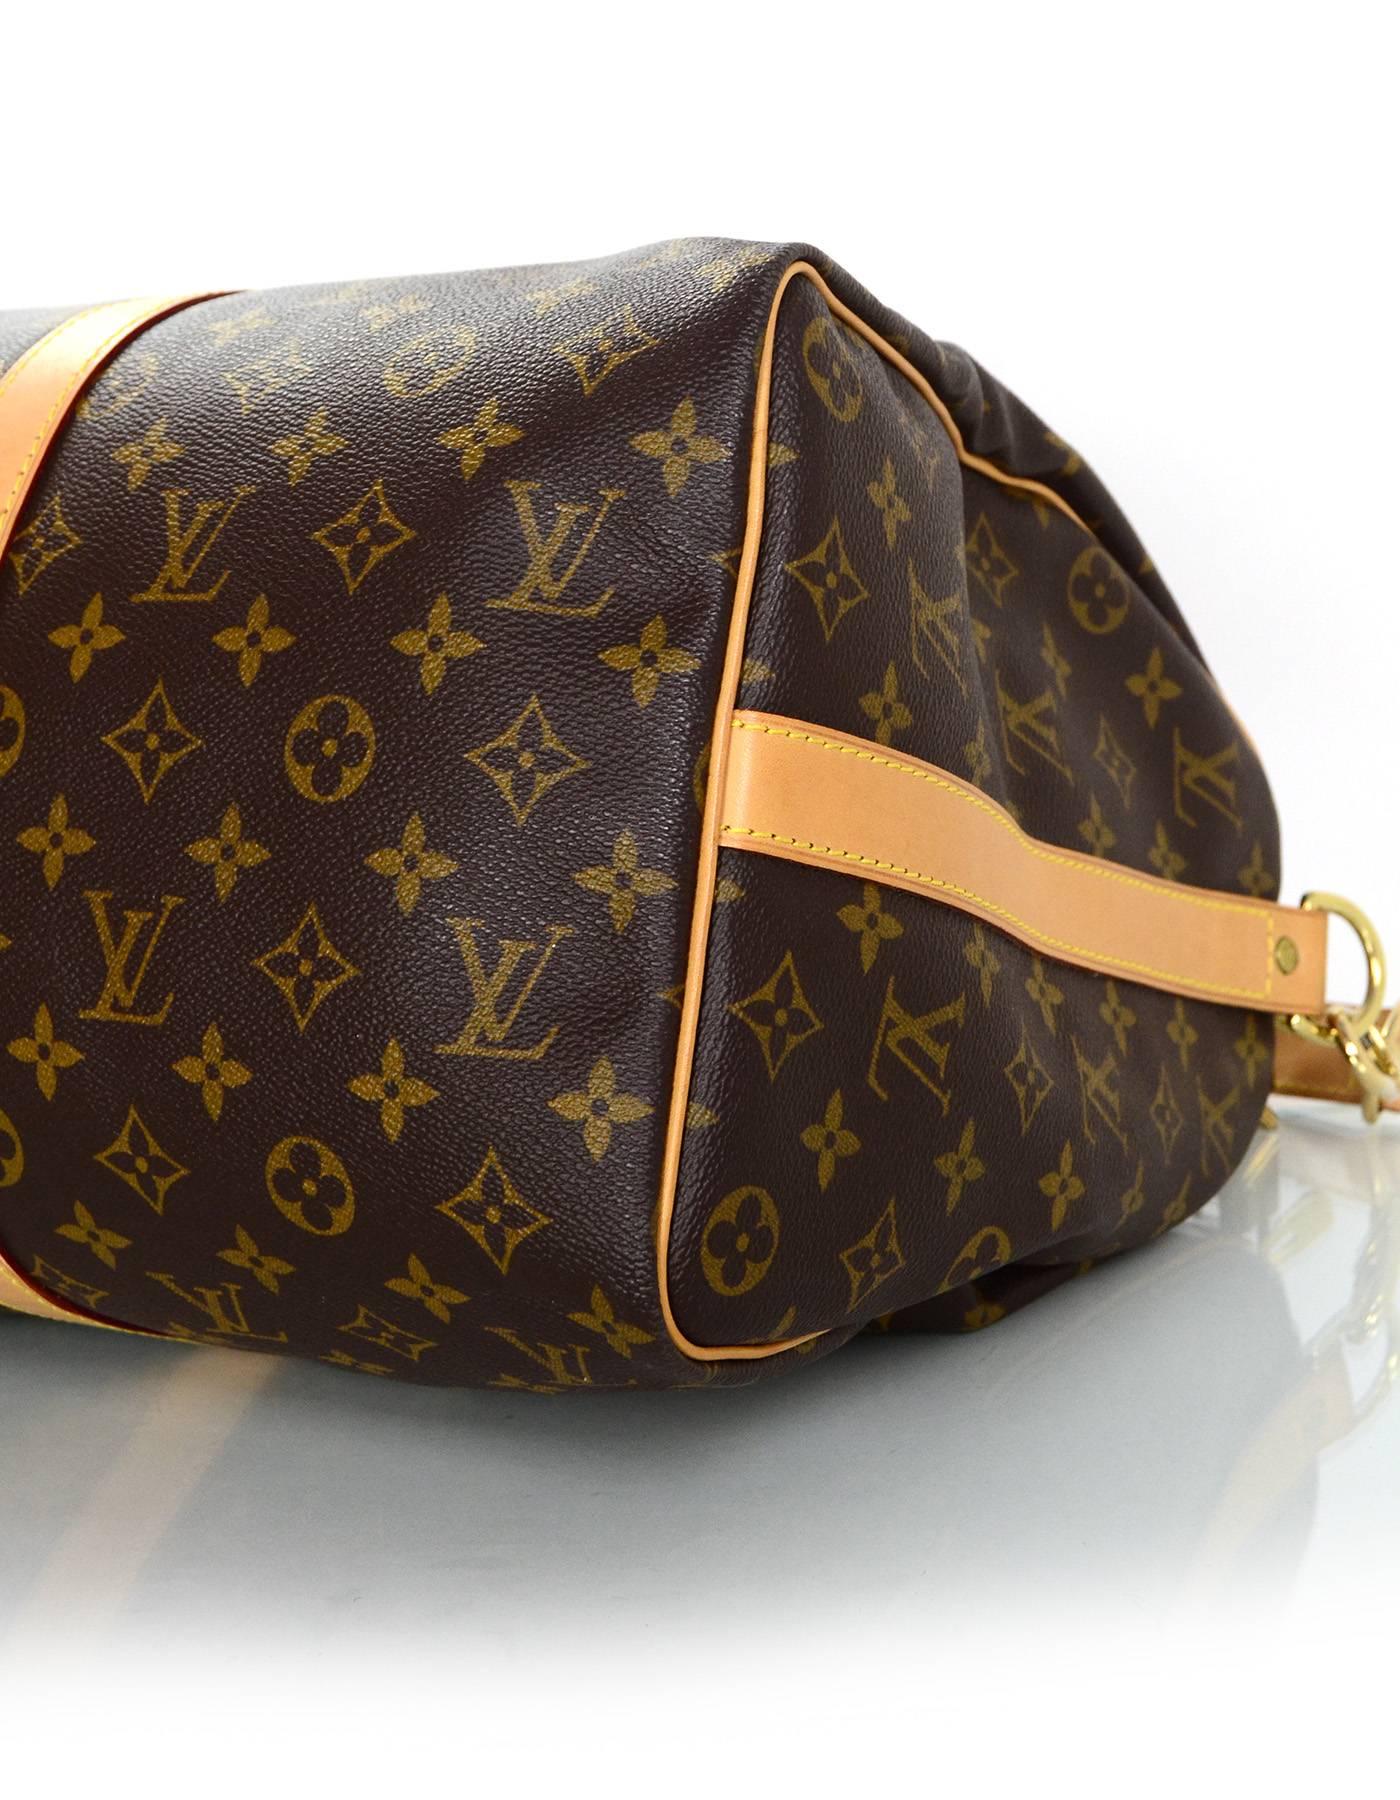 Black Louis Vuitton Monogram Keepall 45 Duffle Weekender Bag